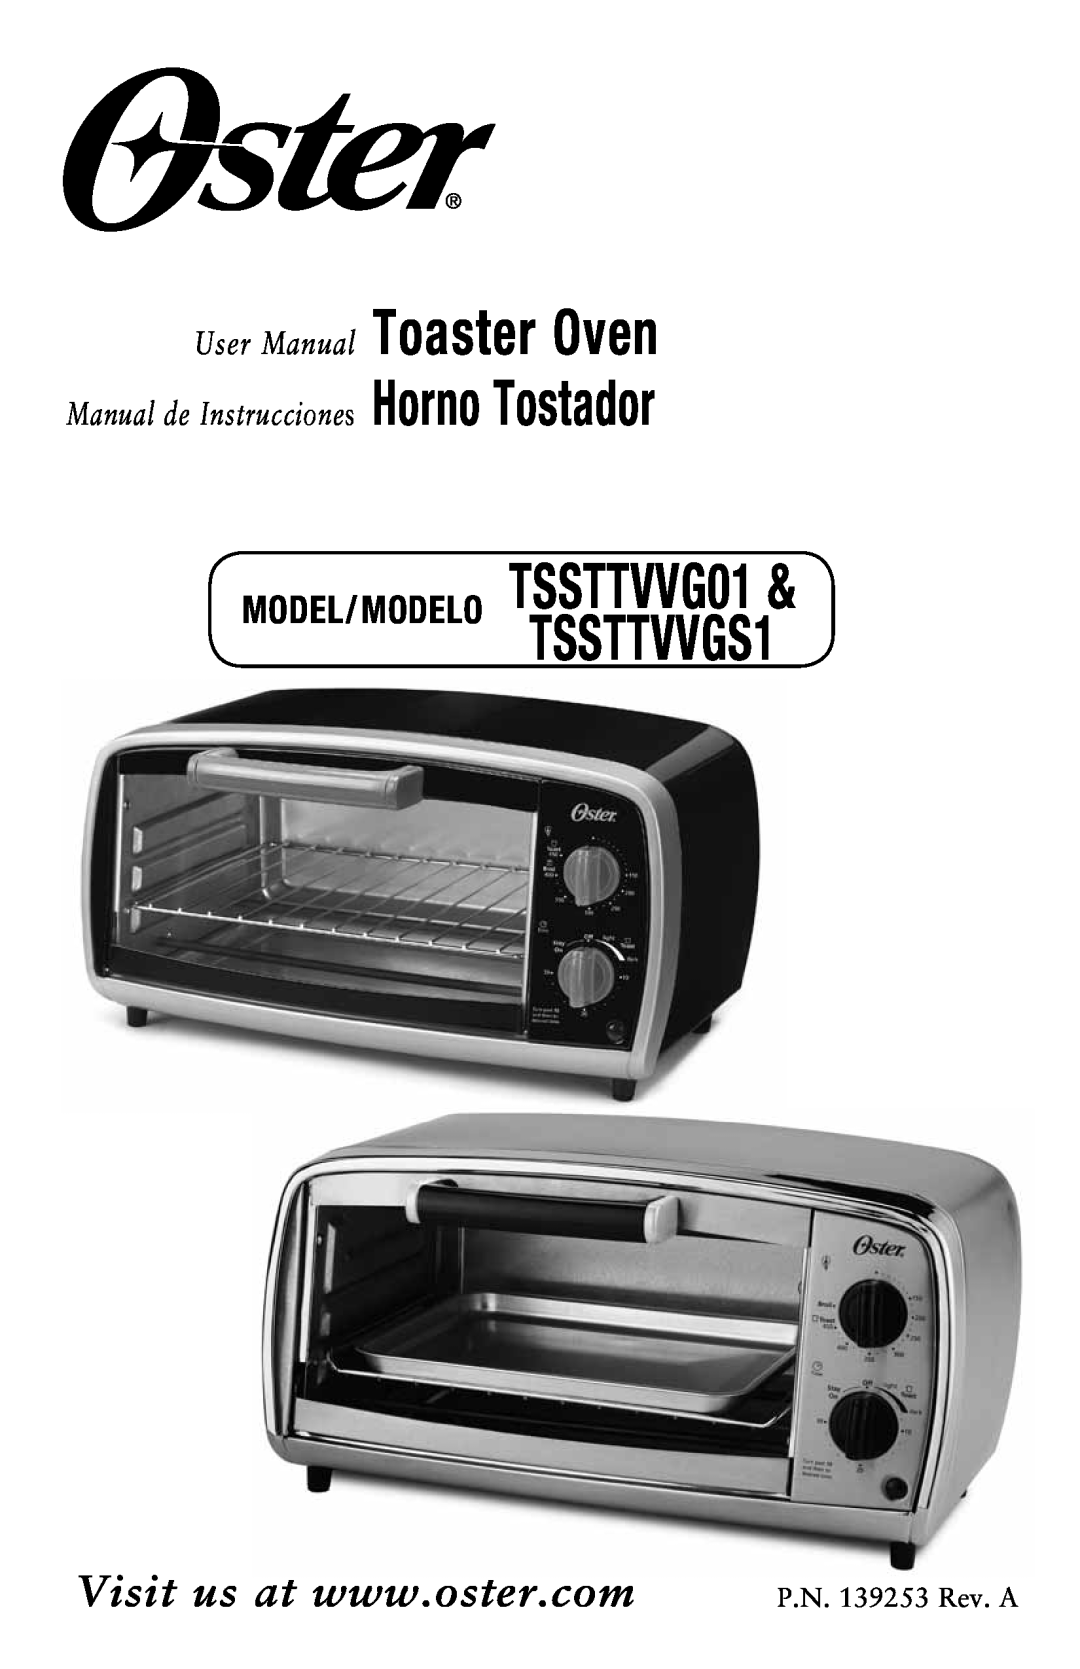 Oster manual Toaster Oven Horno Tostador, Manual de Instrucciones, MODEL/ MODELO TSSTTVVG01TSSTTVVGS1 